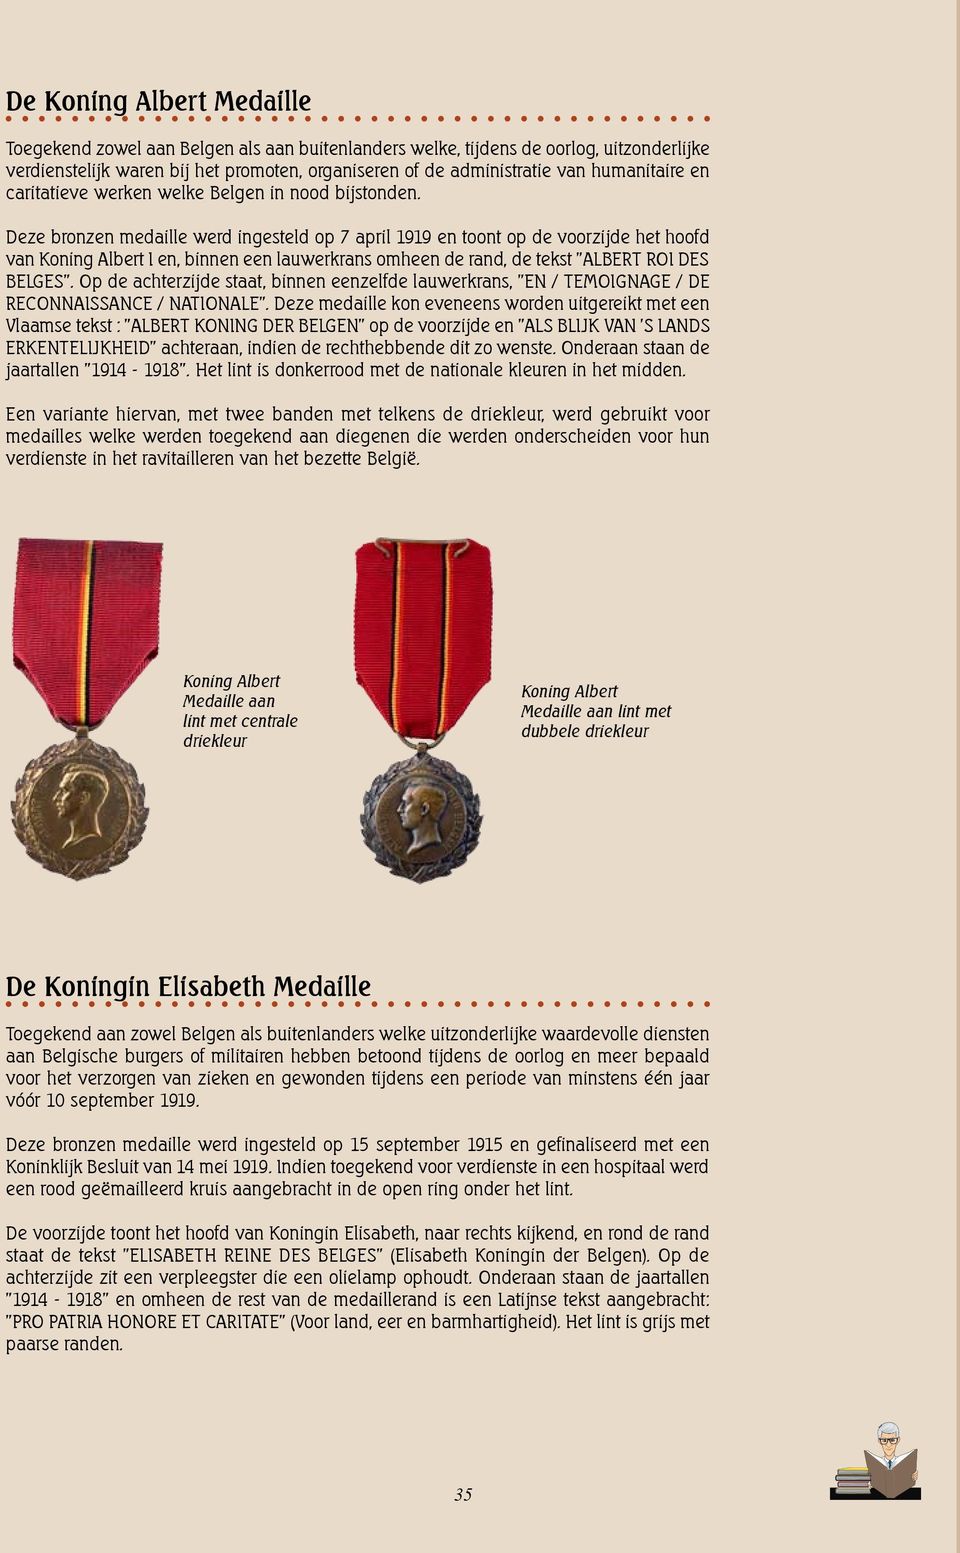 Deze bronzen medaille werd ingesteld op 7 april 1919 en toont op de voorzijde het hoofd van Koning Albert I en, binnen een lauwerkrans omheen de rand, de tekst "ALBERT ROI DES BELGES".